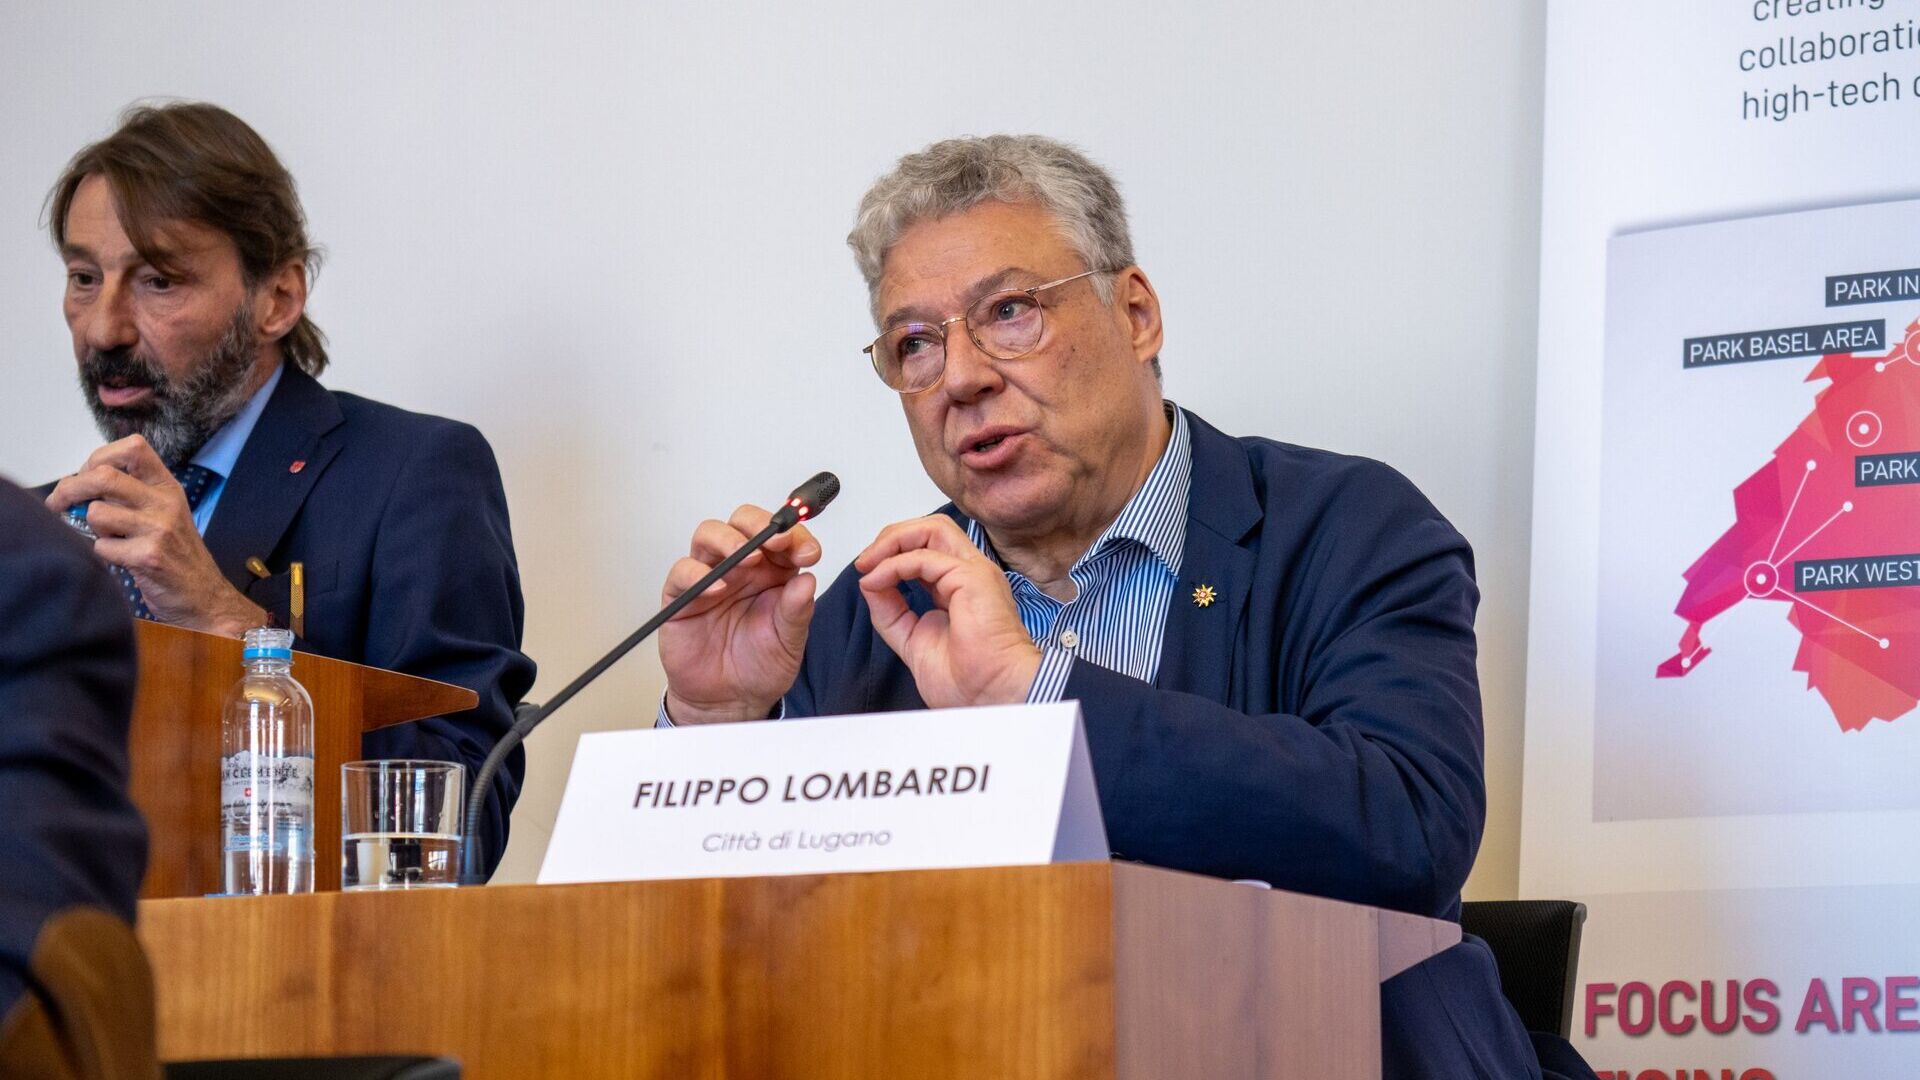 LTCC: Filippo Lombardi gradski je vijećnik i voditelj Odjela za teritorijalni razvoj grada Lugana